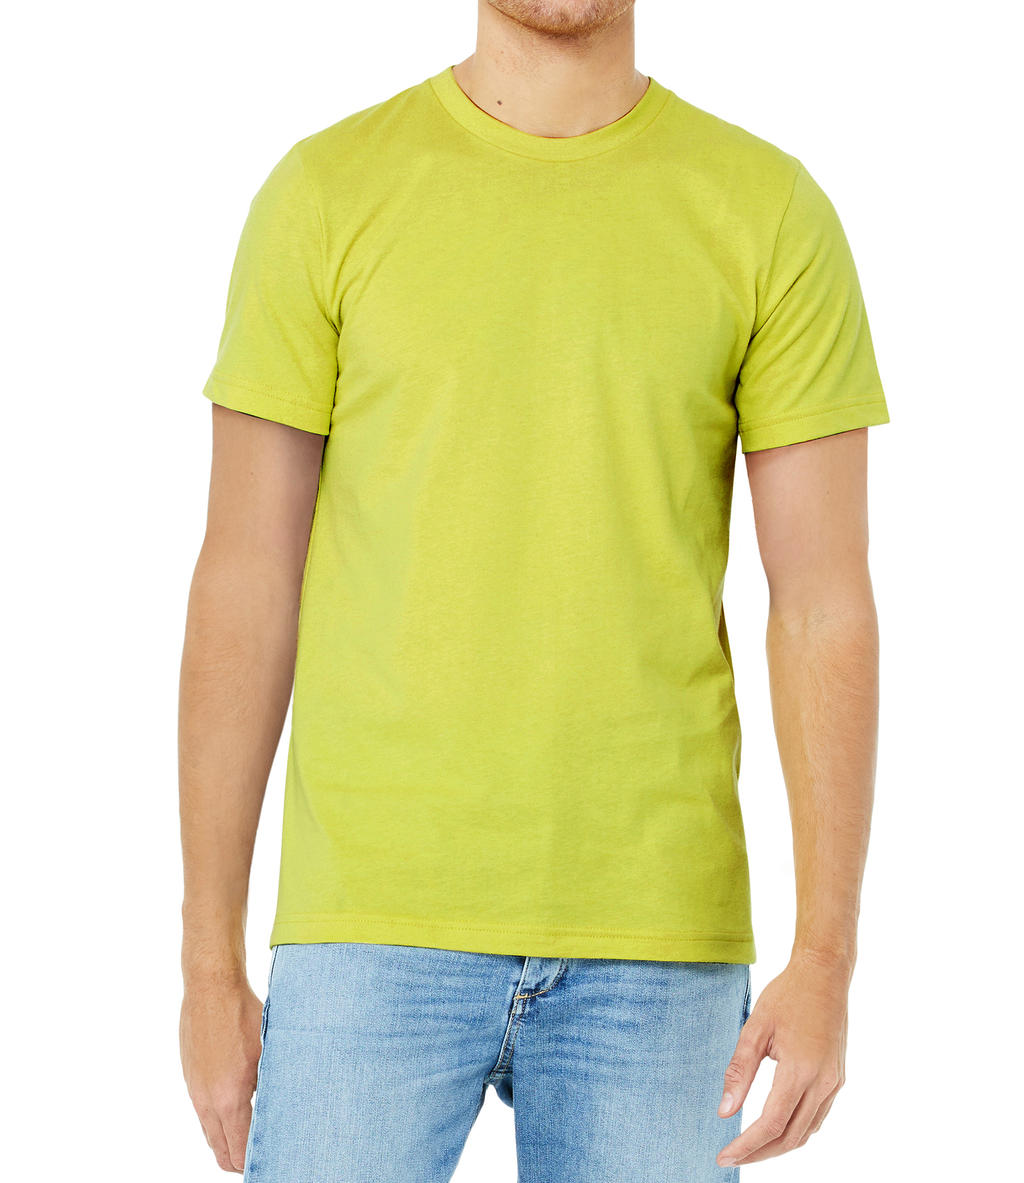 Tričko Bella Jersey - žluté-zelené, S